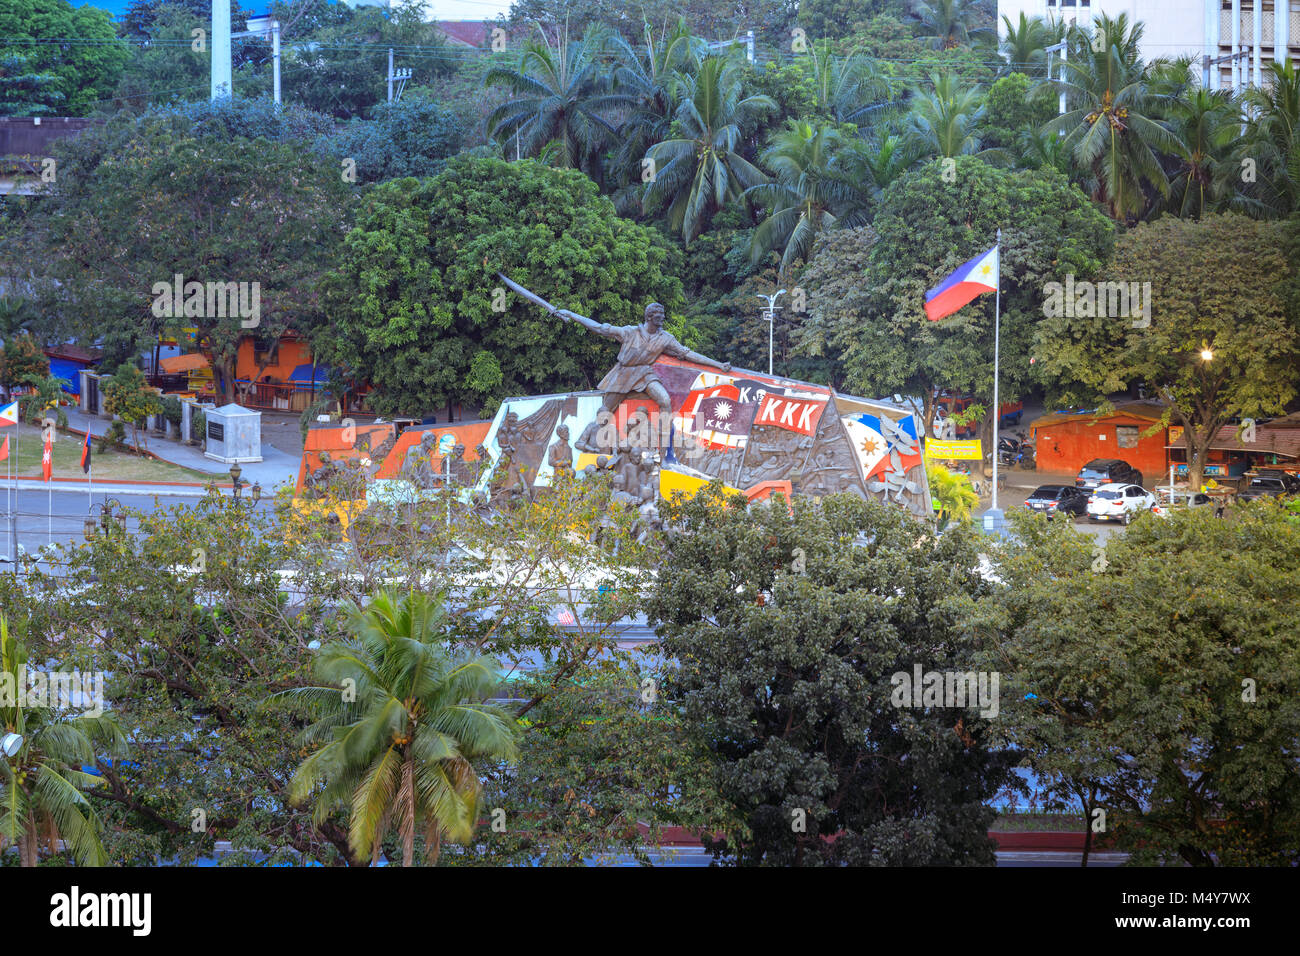 Manila, Philippinen - Feb 17, 2018: Katipunan (kurz KKK) Monument in Philippinen Stockfoto